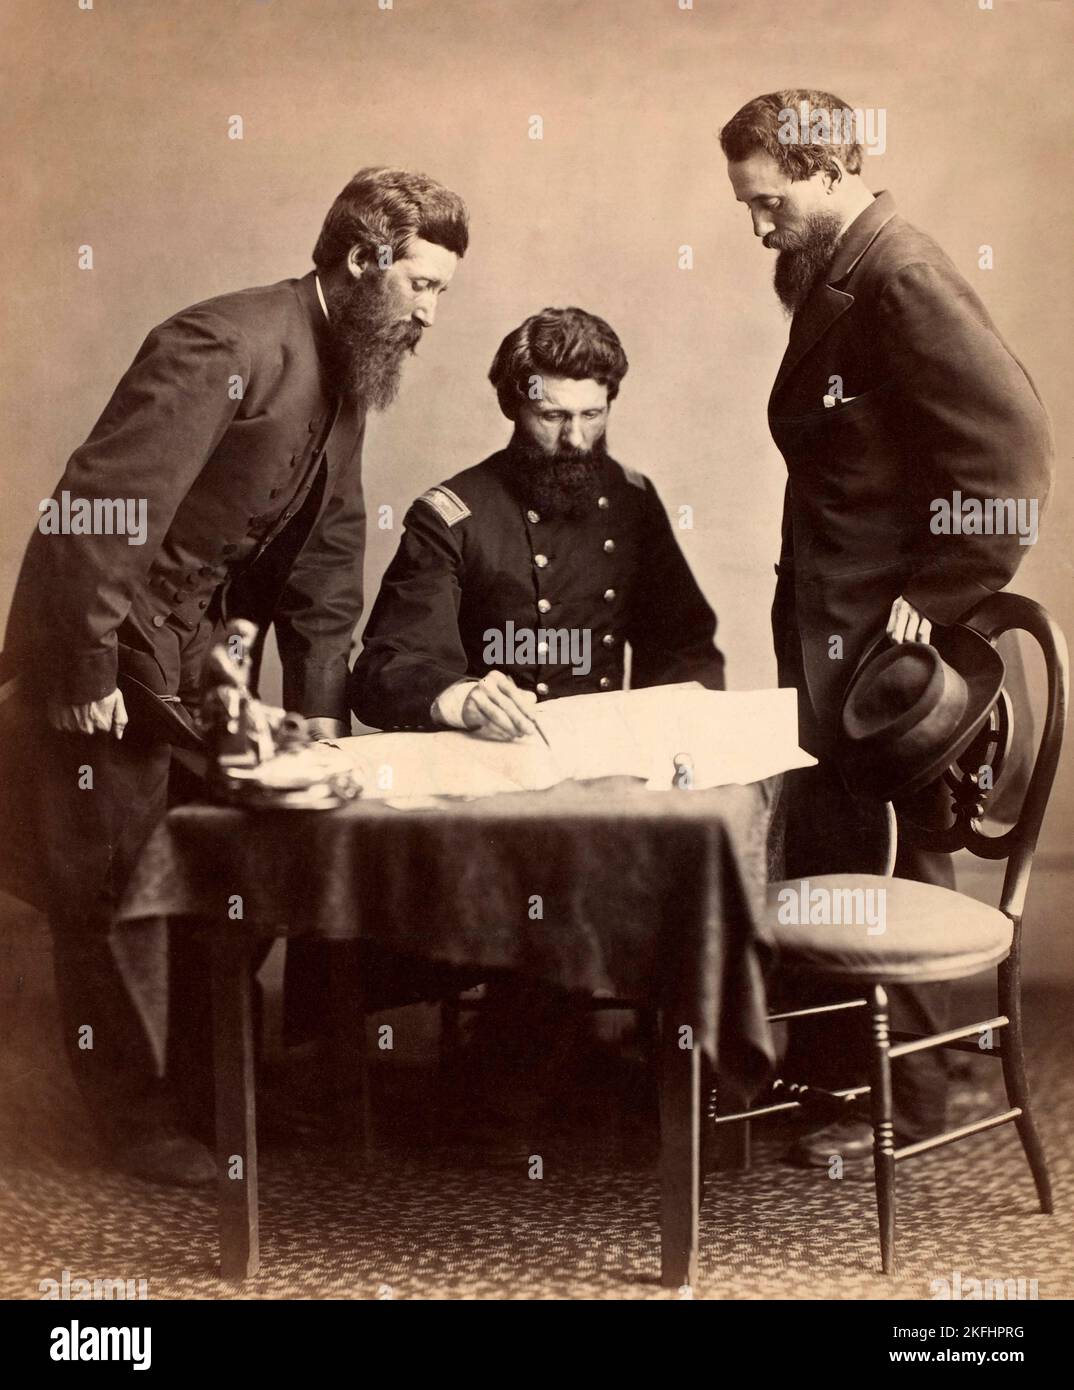 Amerikanischer Bürgerkrieg - Planung der Gefangennahme von Booth - Foto von Alexander Gardner im Jahr 1865 Stockfoto